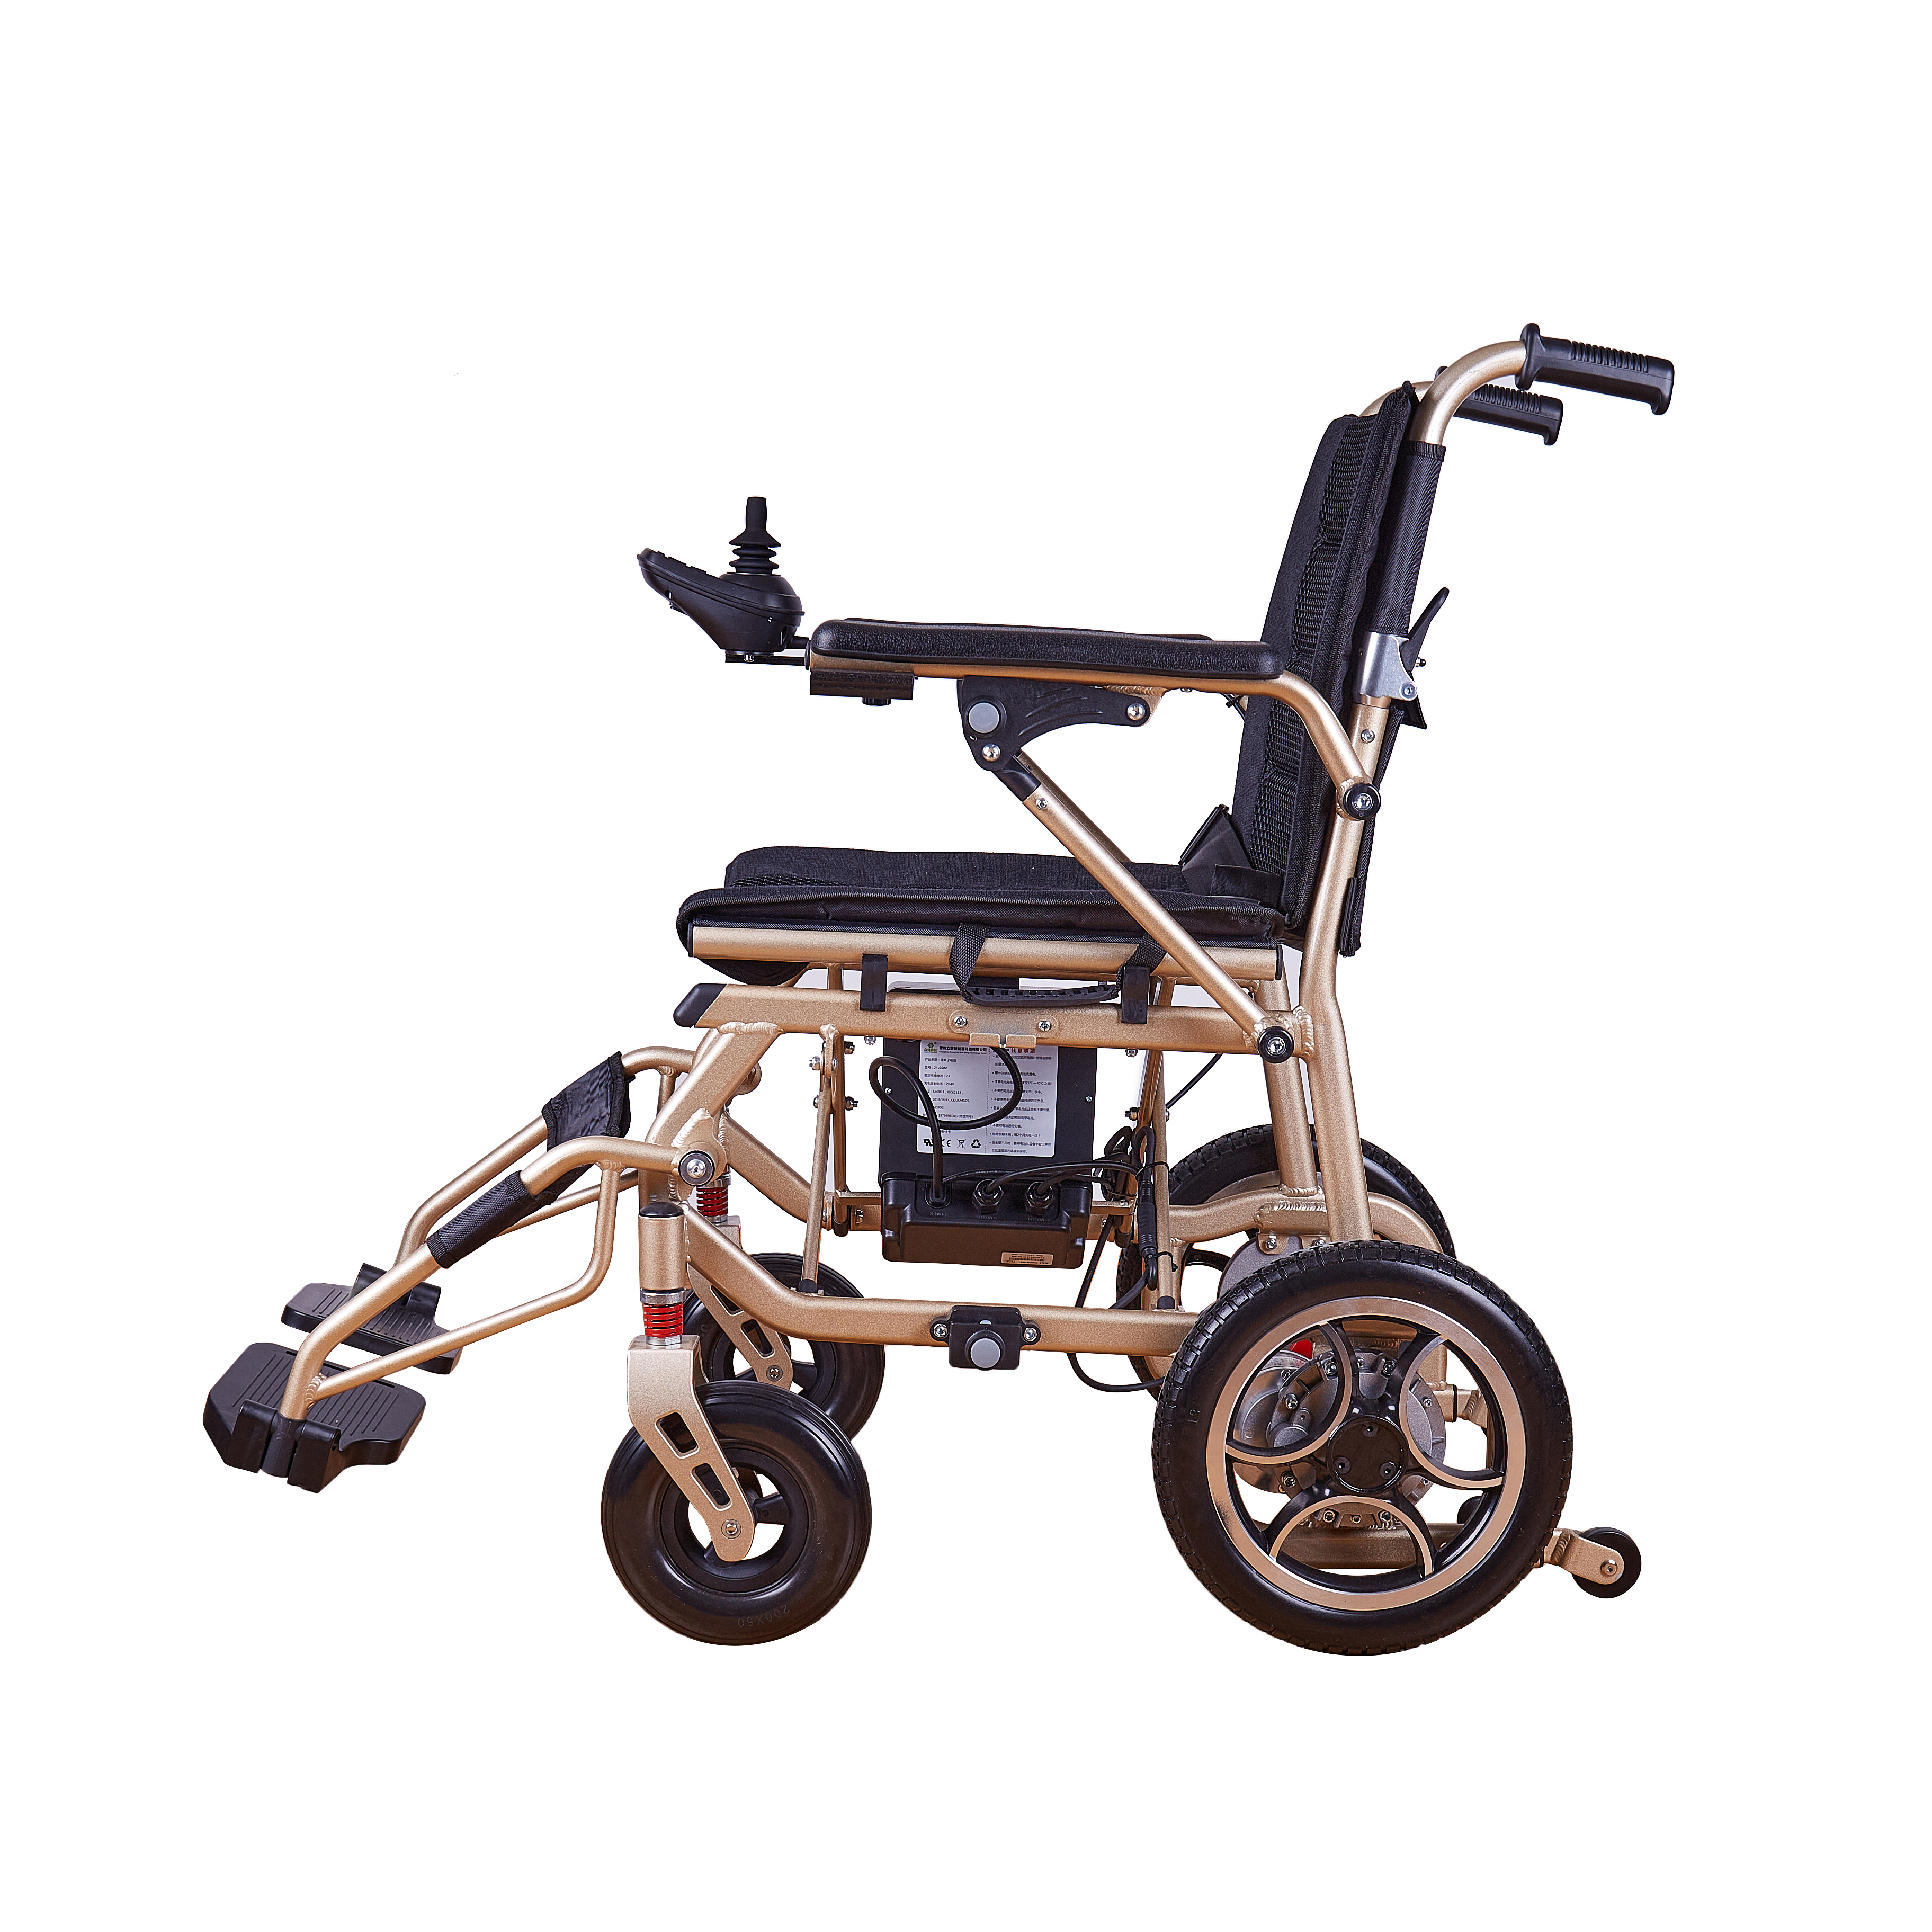 Heißer Verkauf leichte medizinische Ausrüstung 4-Rad-faltbare faltbare motorisierte Mobilitätsroller und Rollstühle für Erwachsene Empfohlenes Bild